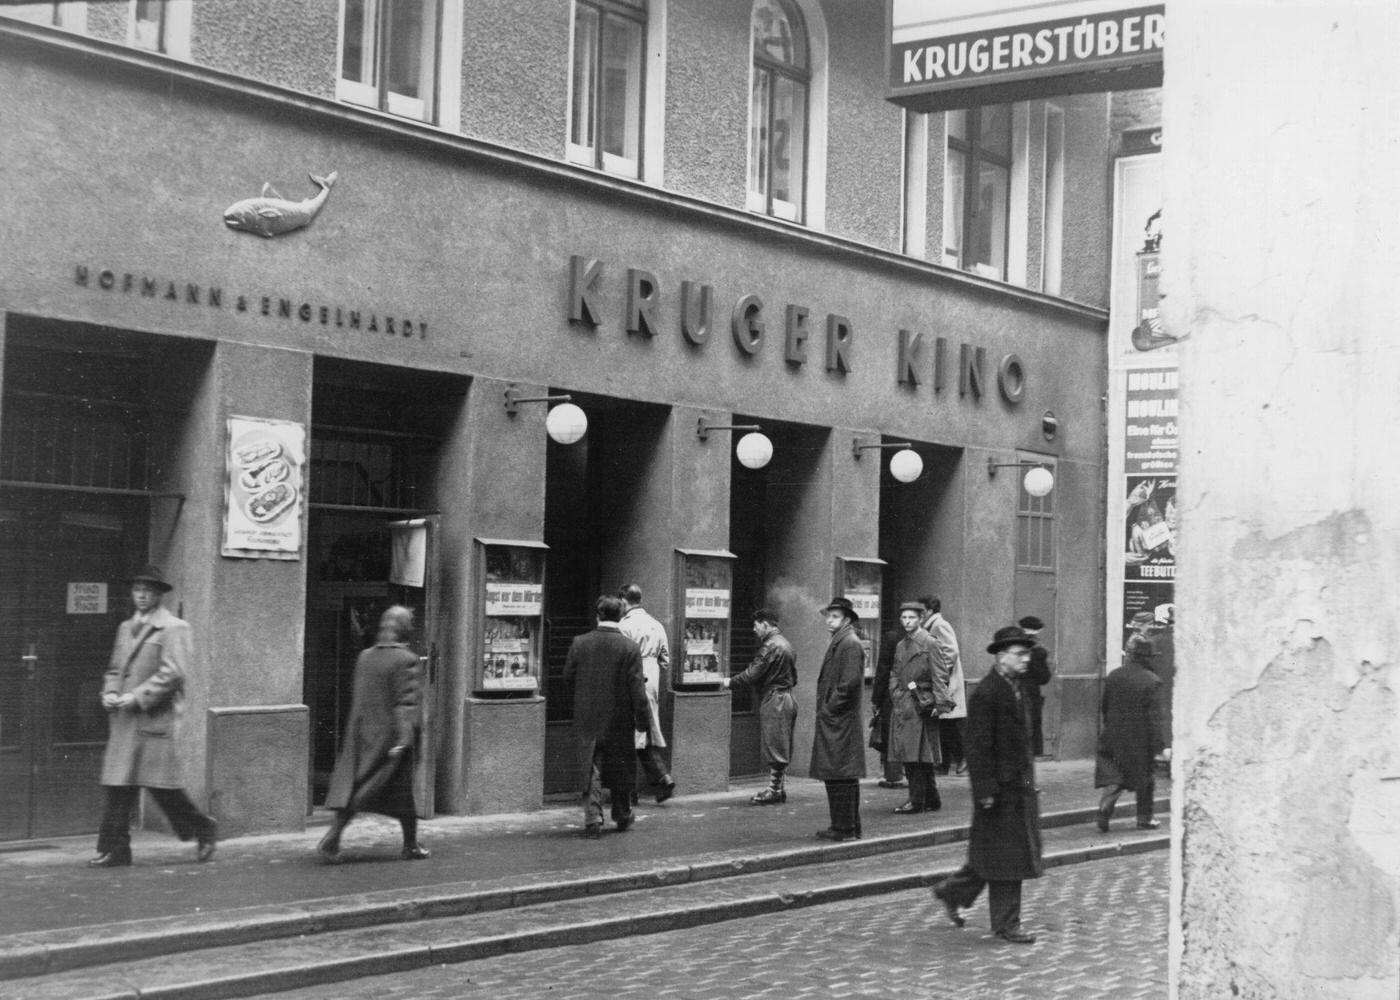 Kruger Cinema at Krugerstrasse 5 in Vienna, photographed on November 3rd, 1954.